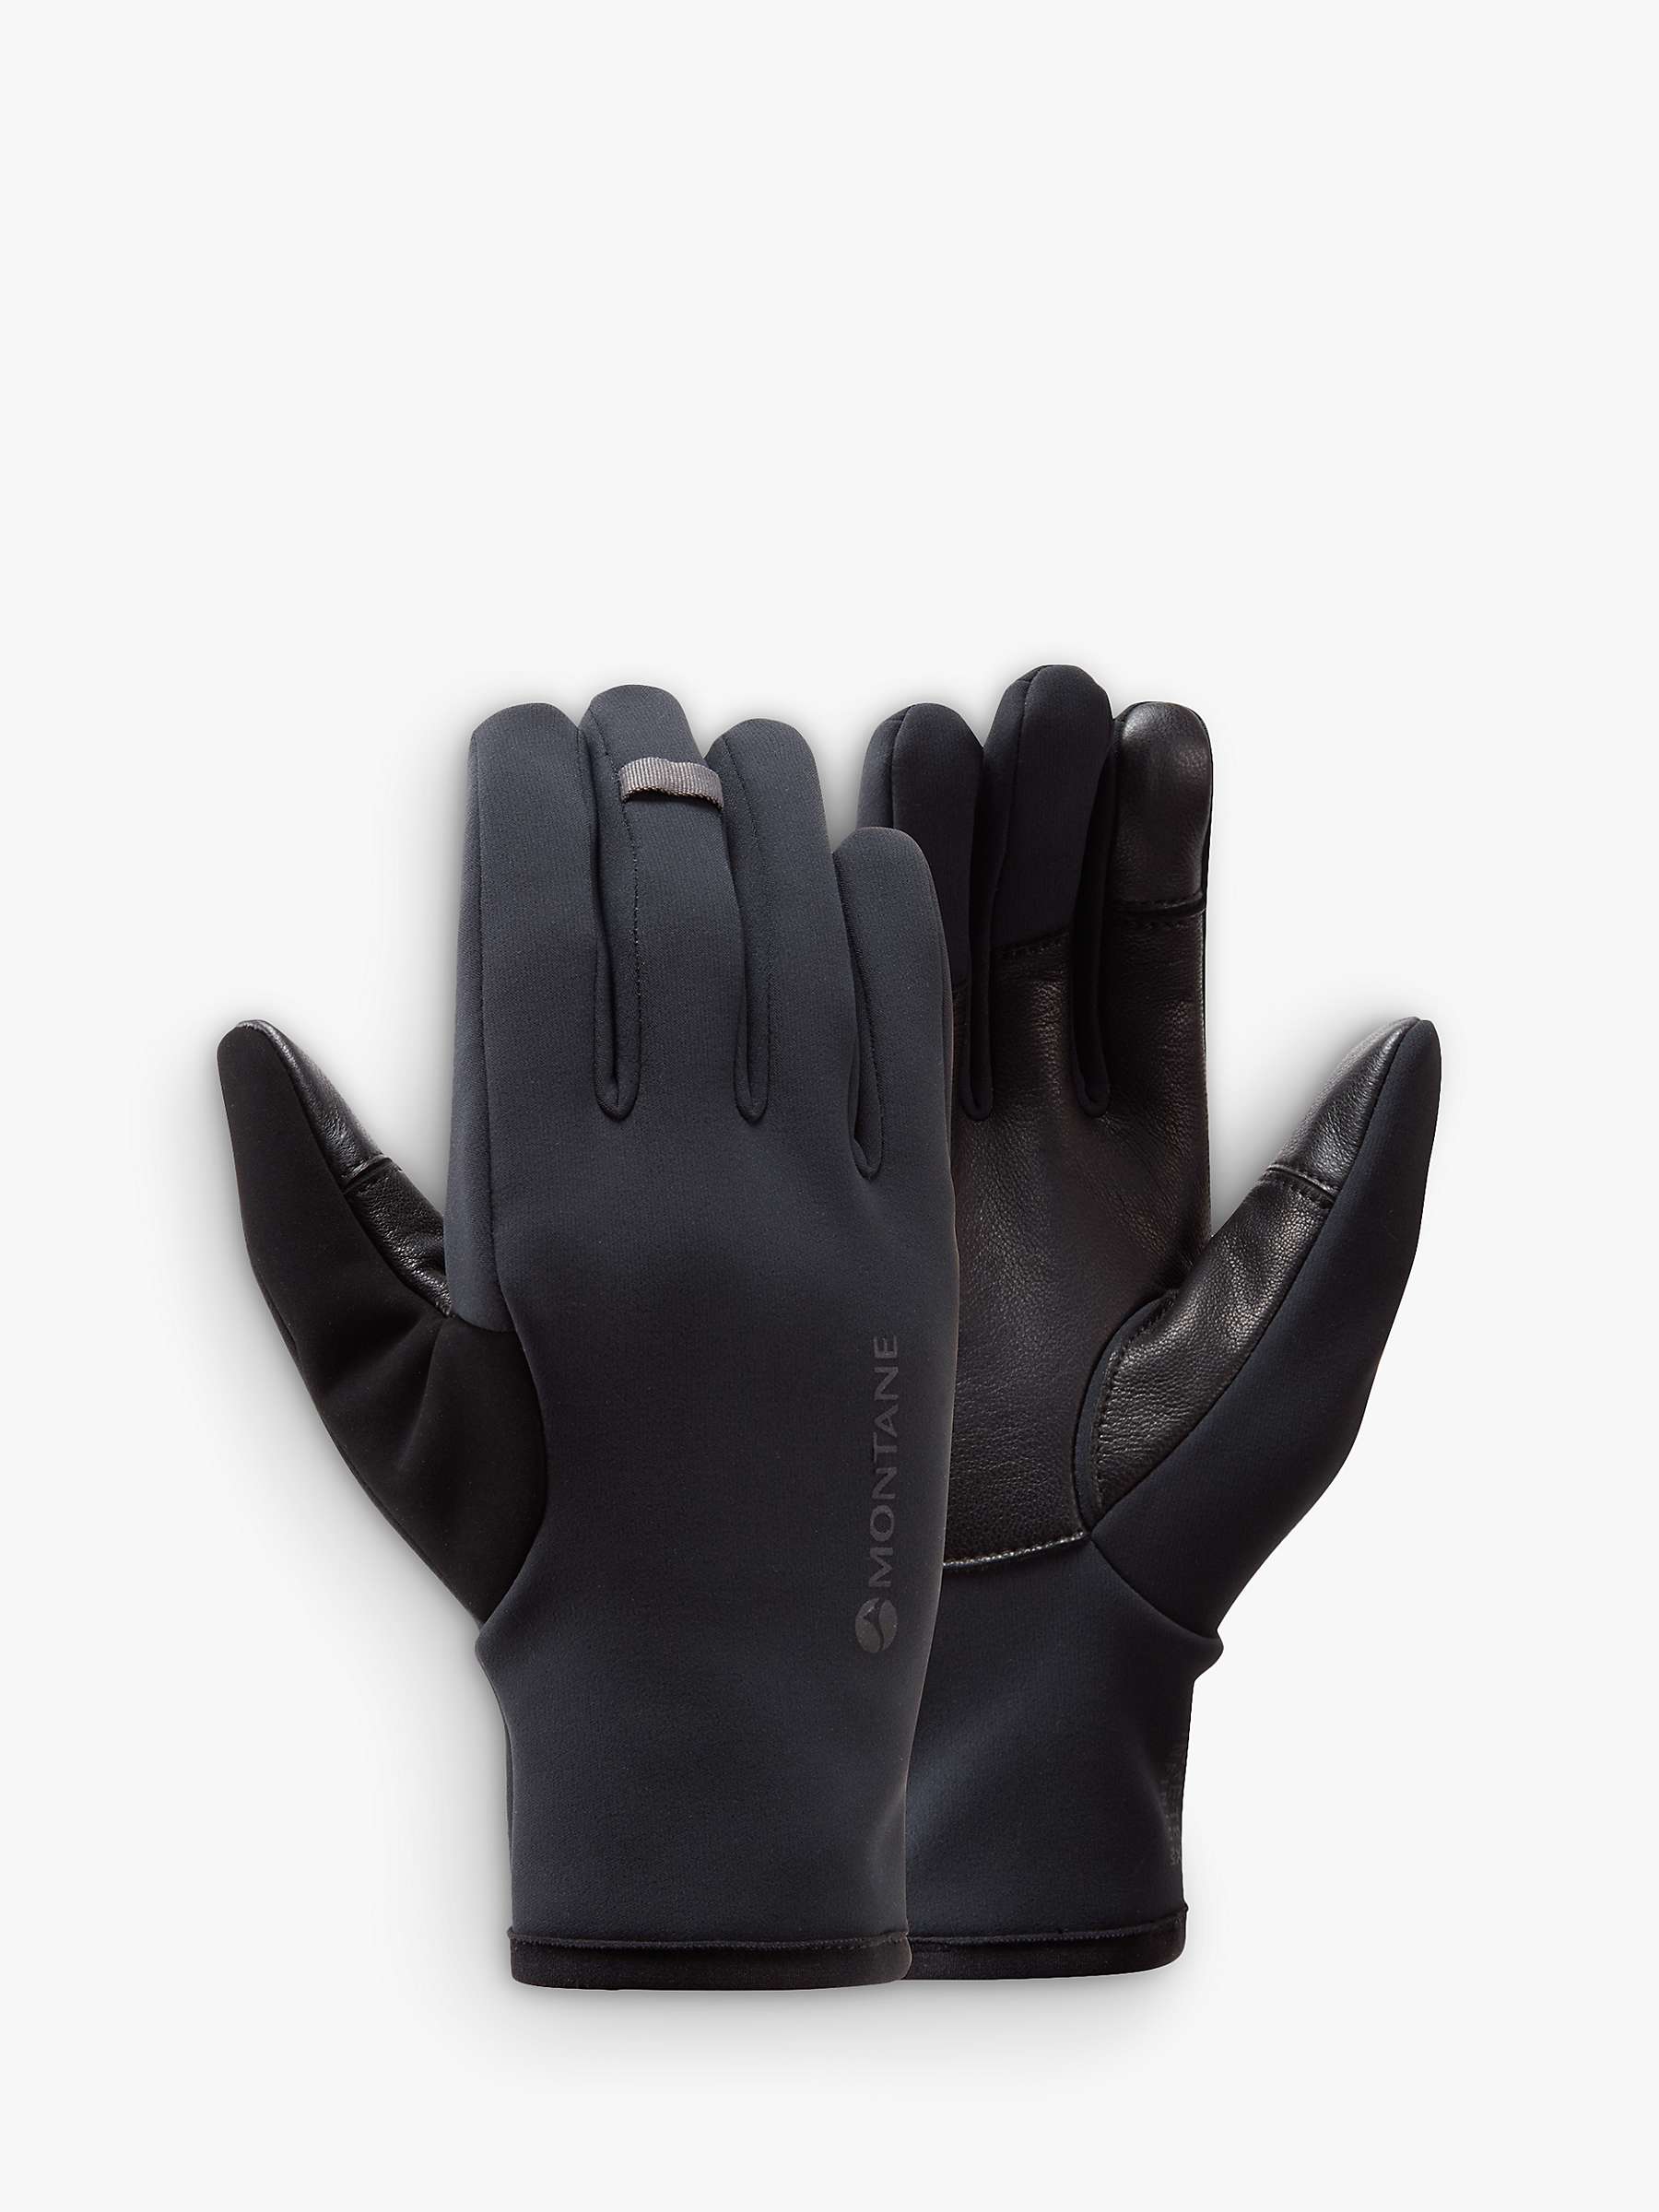 Buy Montane Women's Windjammer Lite Windproof Gloves, Black Online at johnlewis.com